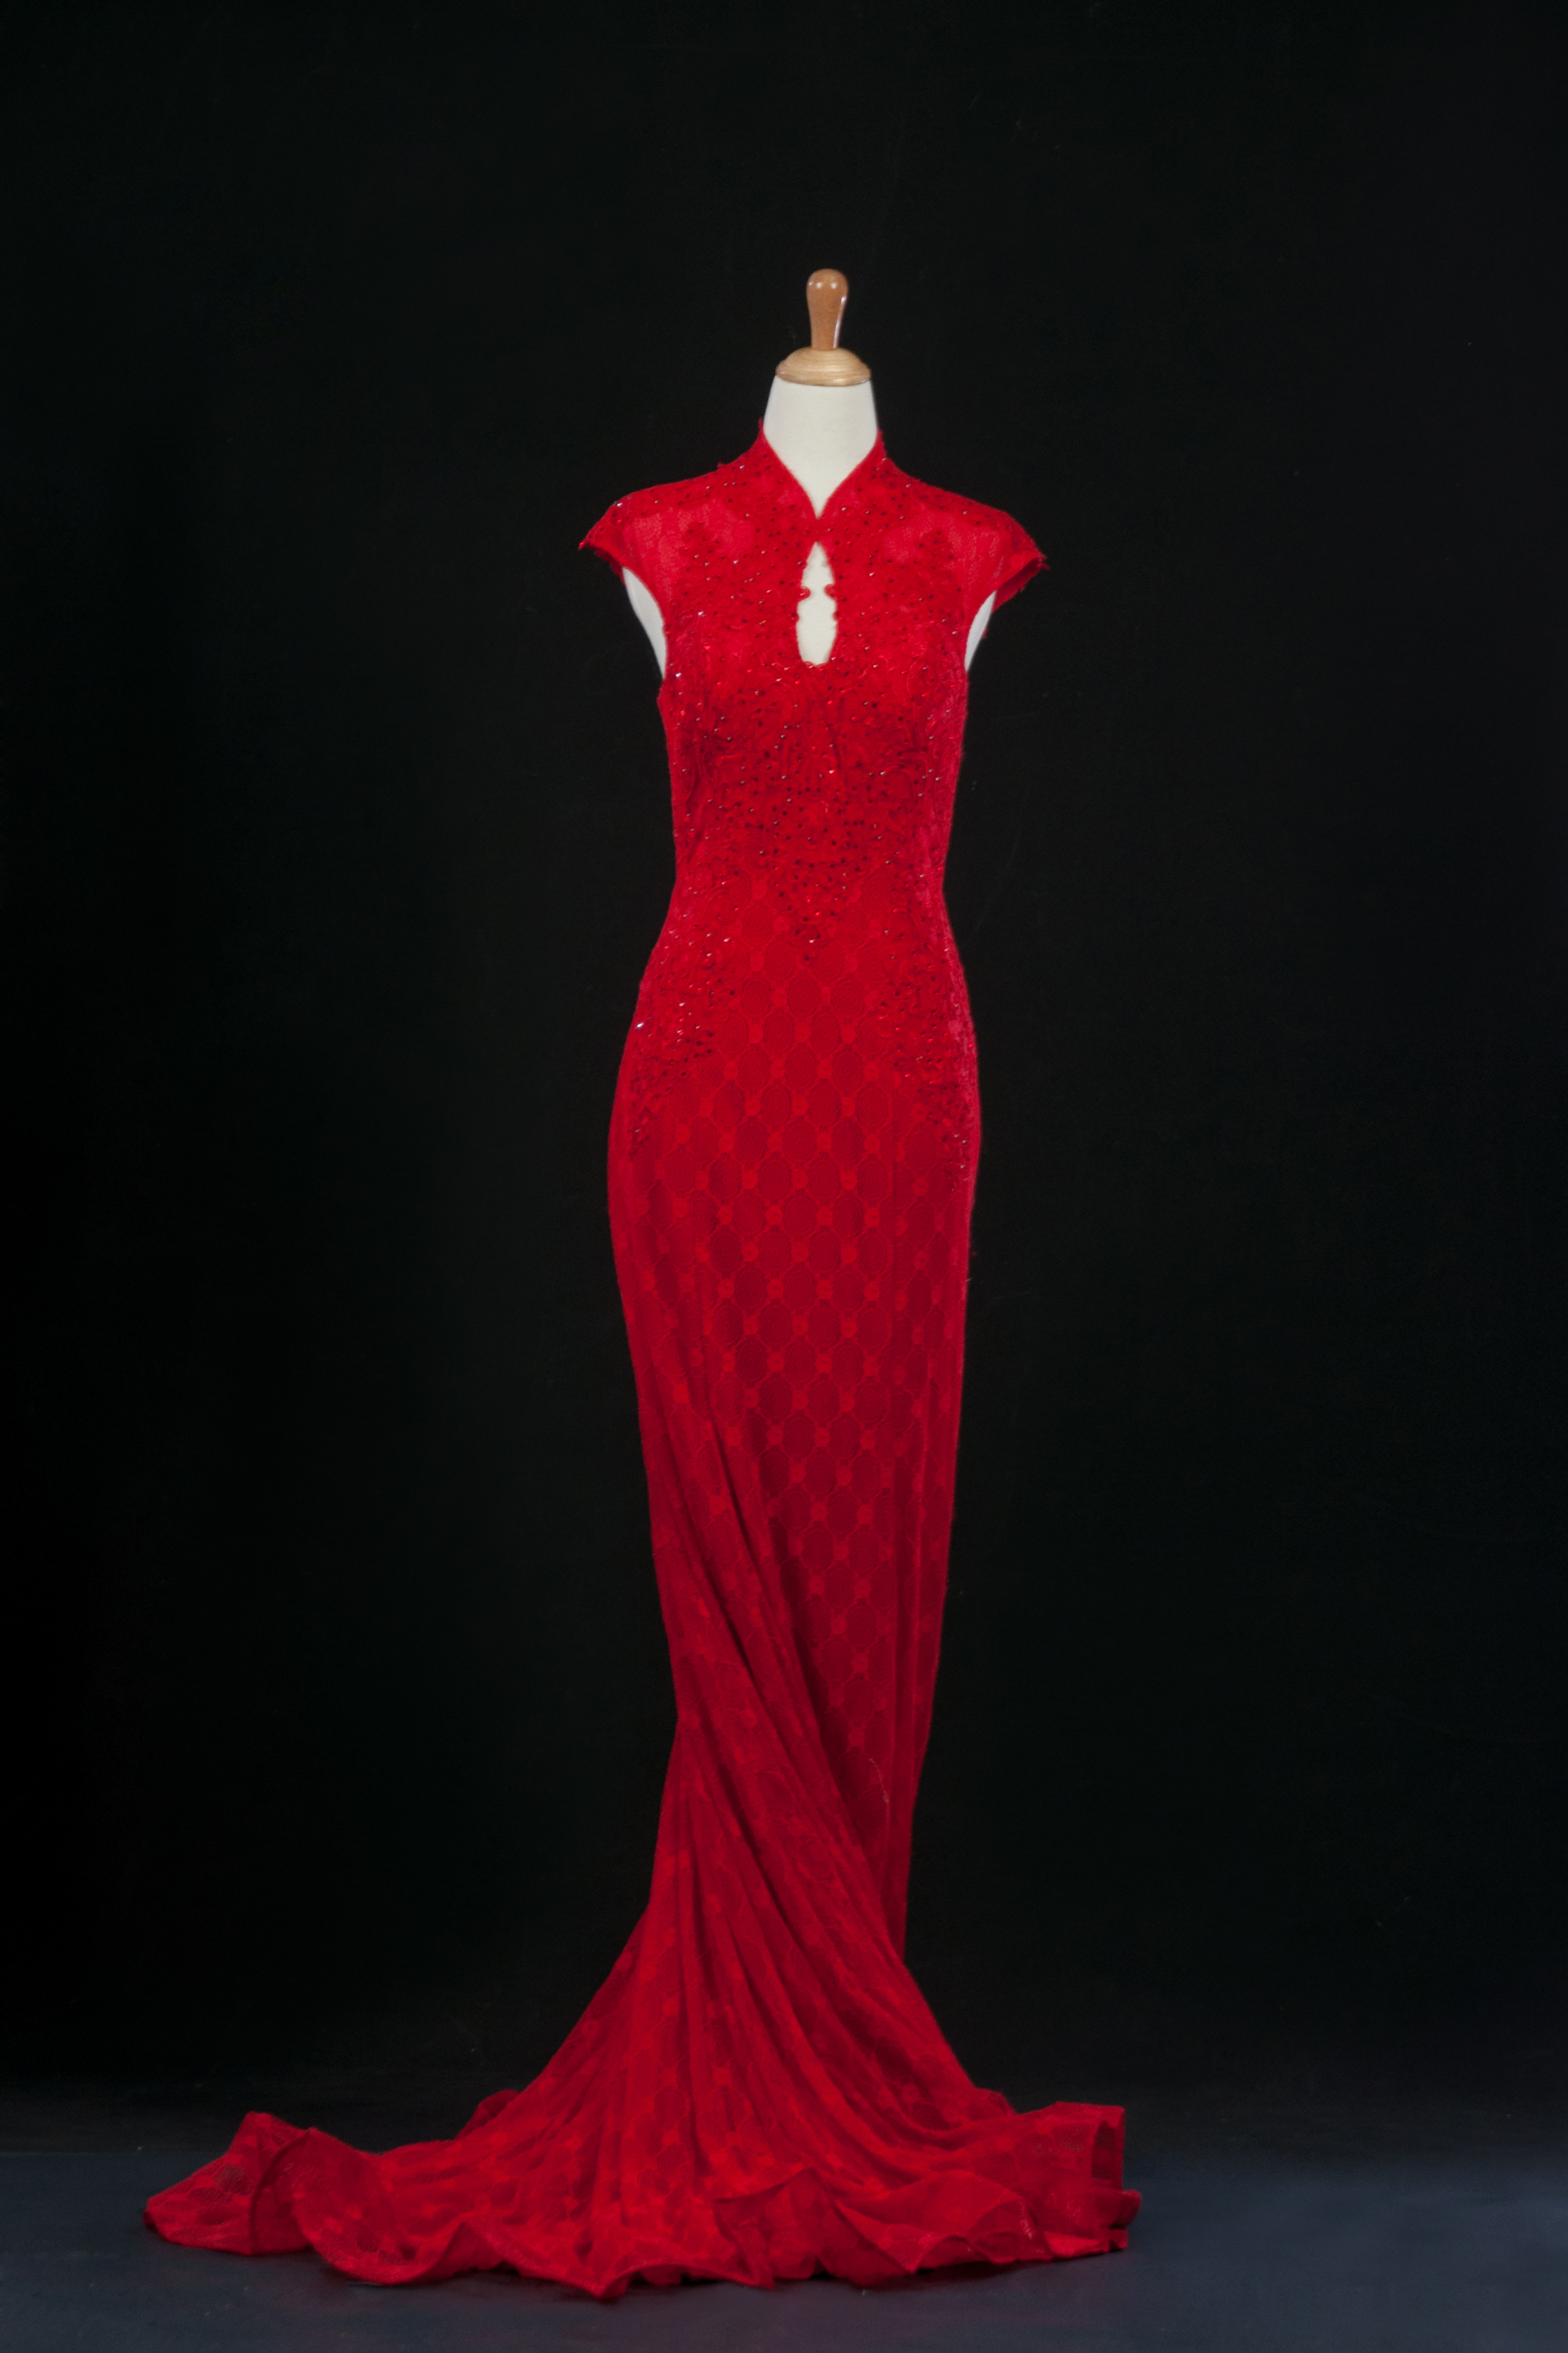 紅色旗袍款，傳統帶點西方魚尾線條。

定價:35000